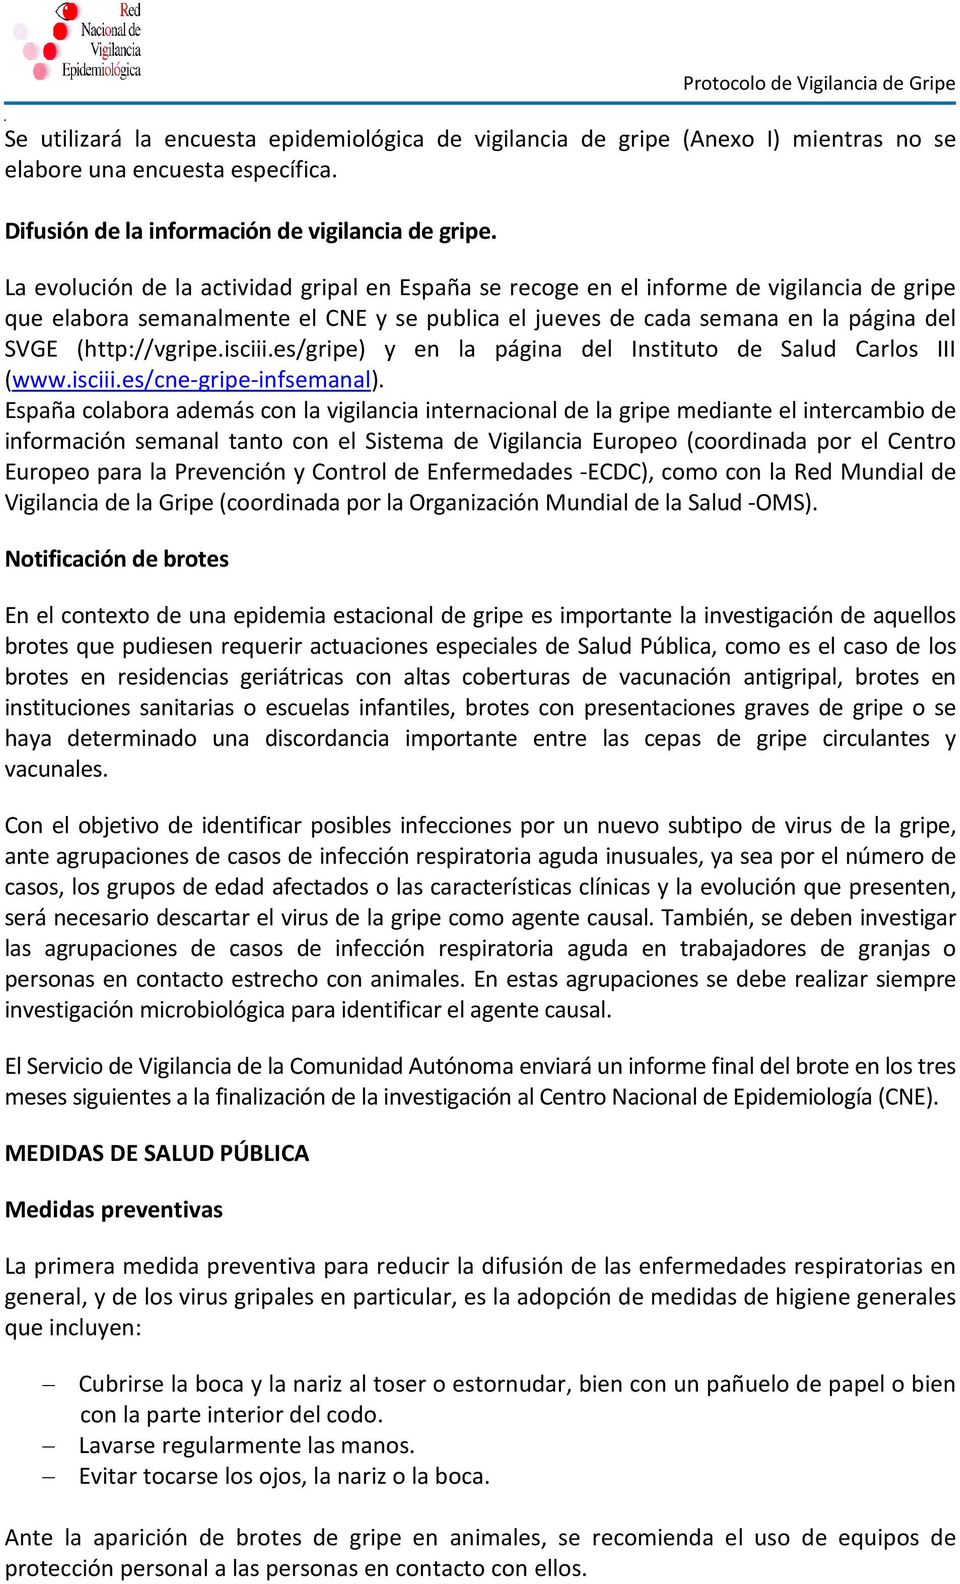 isciii.es/gripe) y en la página del Instituto de Salud Carlos III (www.isciii.es/cne-gripe-infsemanal).